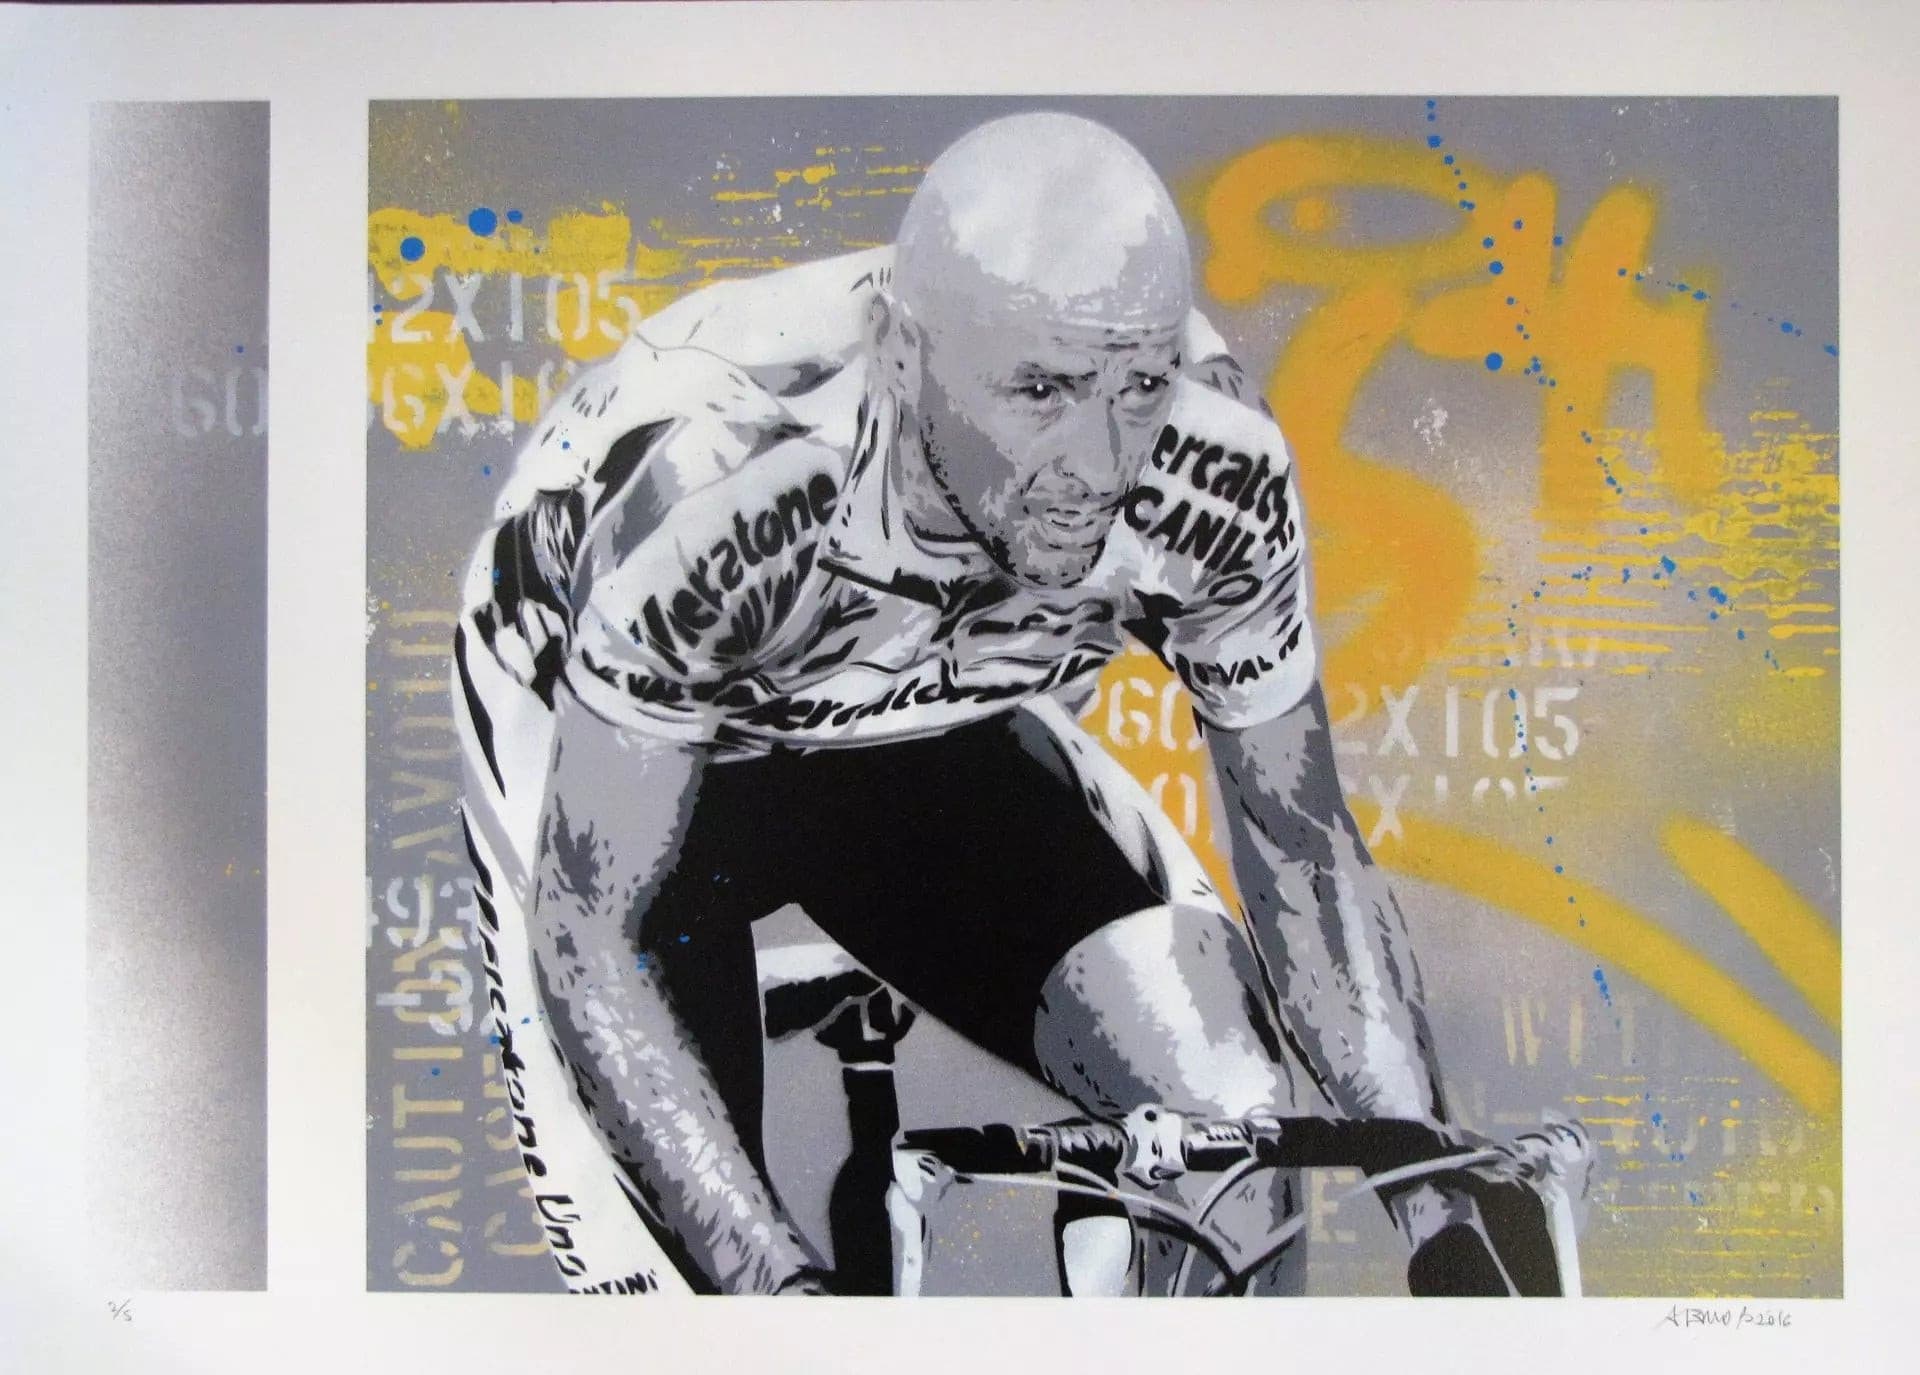 Tribute To Pantani di Alessio-B. Stampa giclée stampa giclée su carta 320 gsm edizione limitata rappresentante un tributo a Marco Pantani | Cd Studio d'Arte